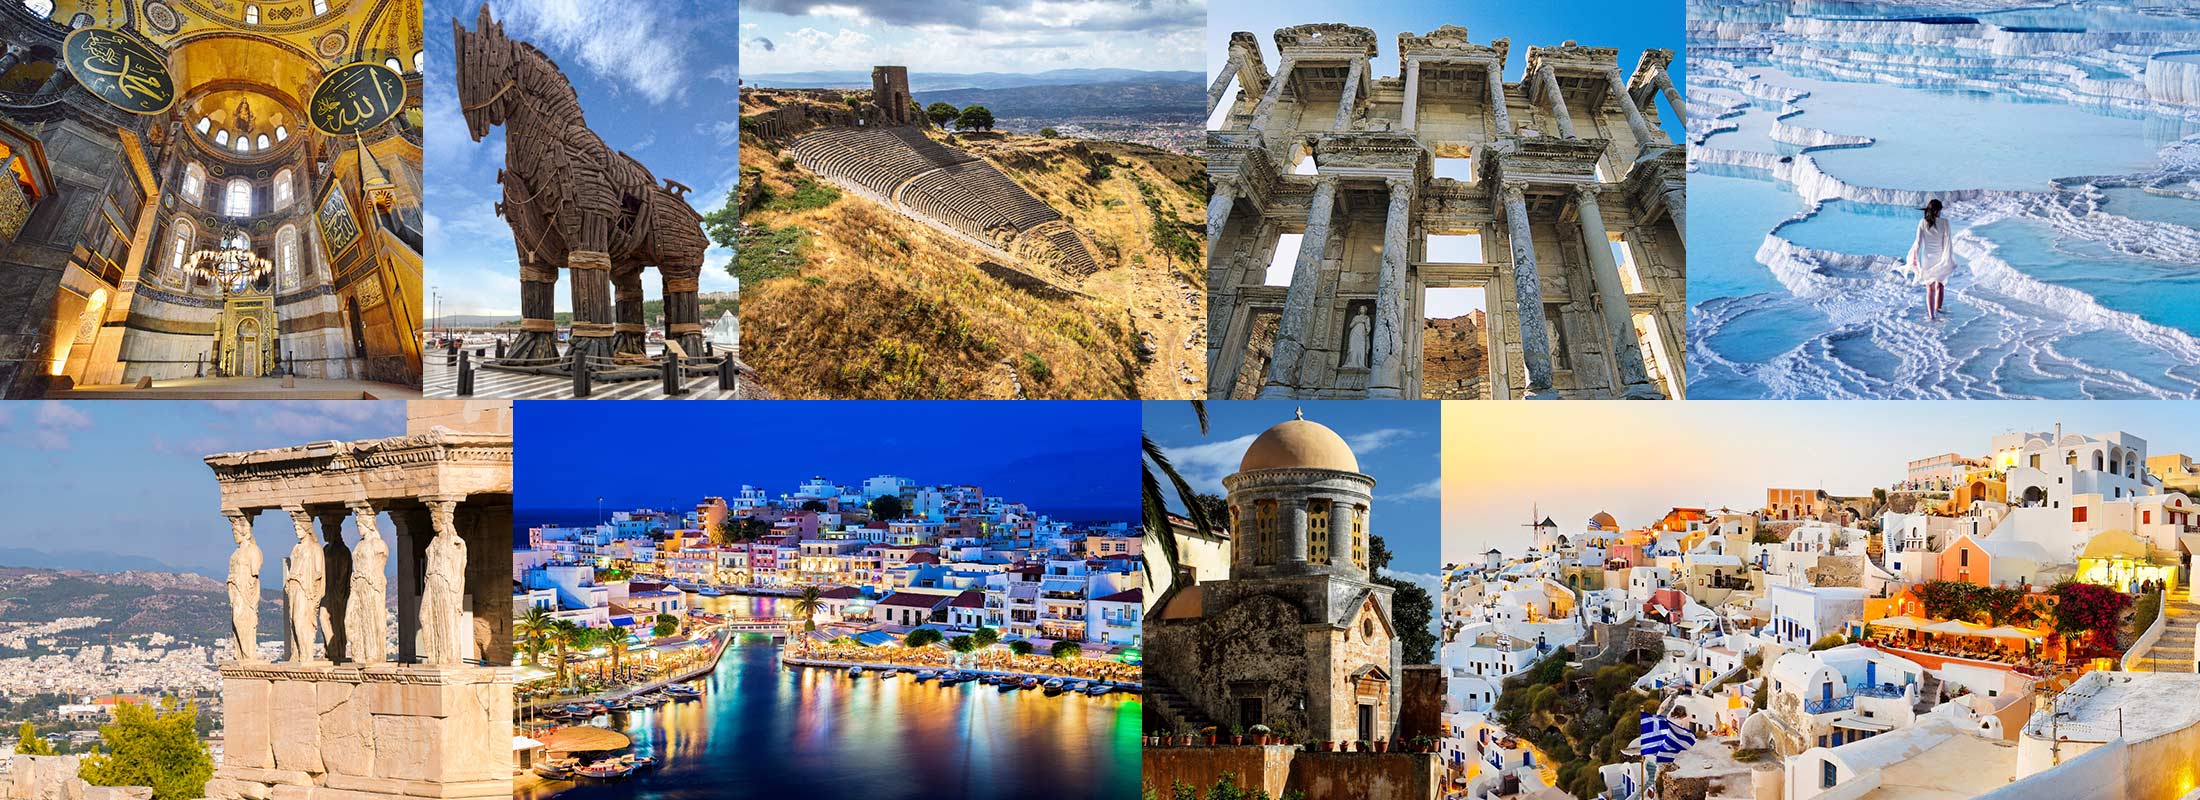 istanbul-pergamon-troy-ephesus-pamukkale-hierapolis-athens-santorini-heraklion-crete-greece-turkey-package-tours